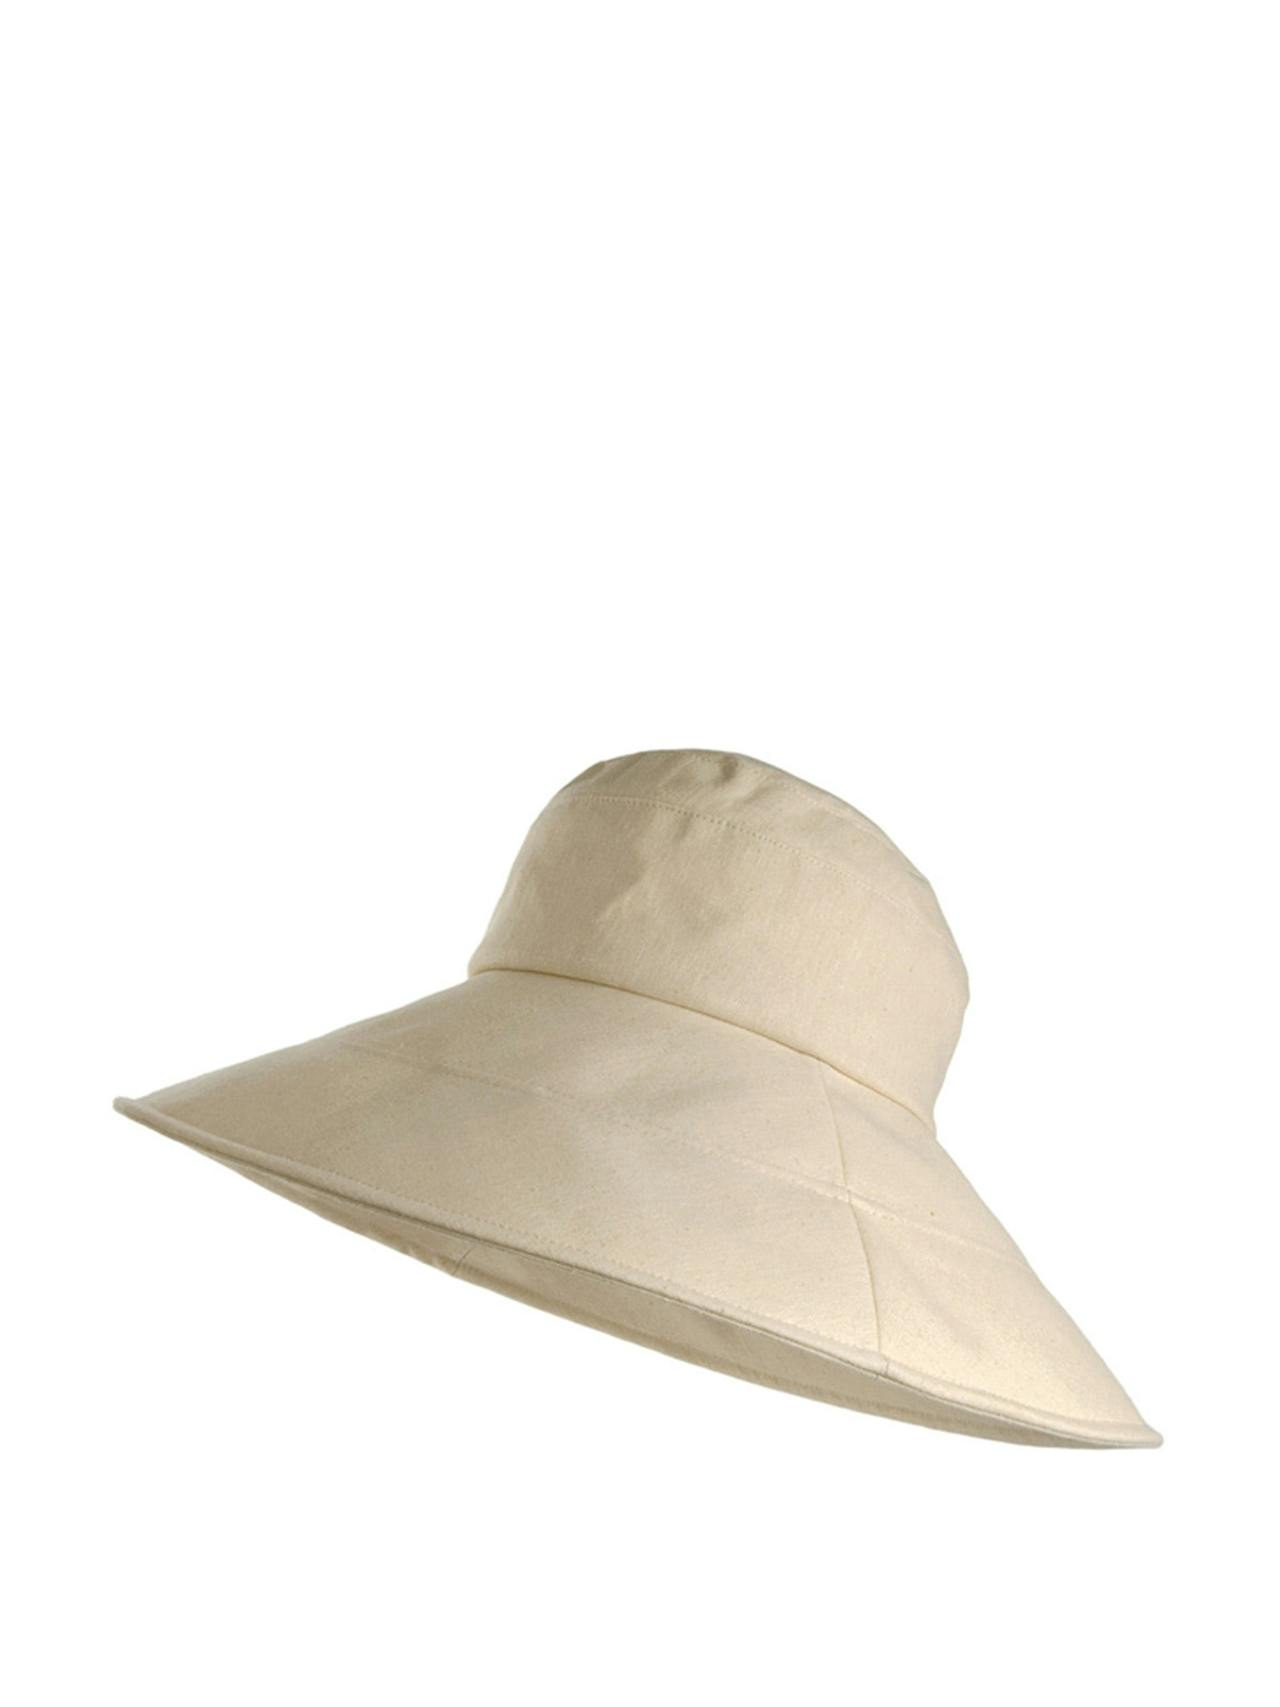 Monaco packable sun hat